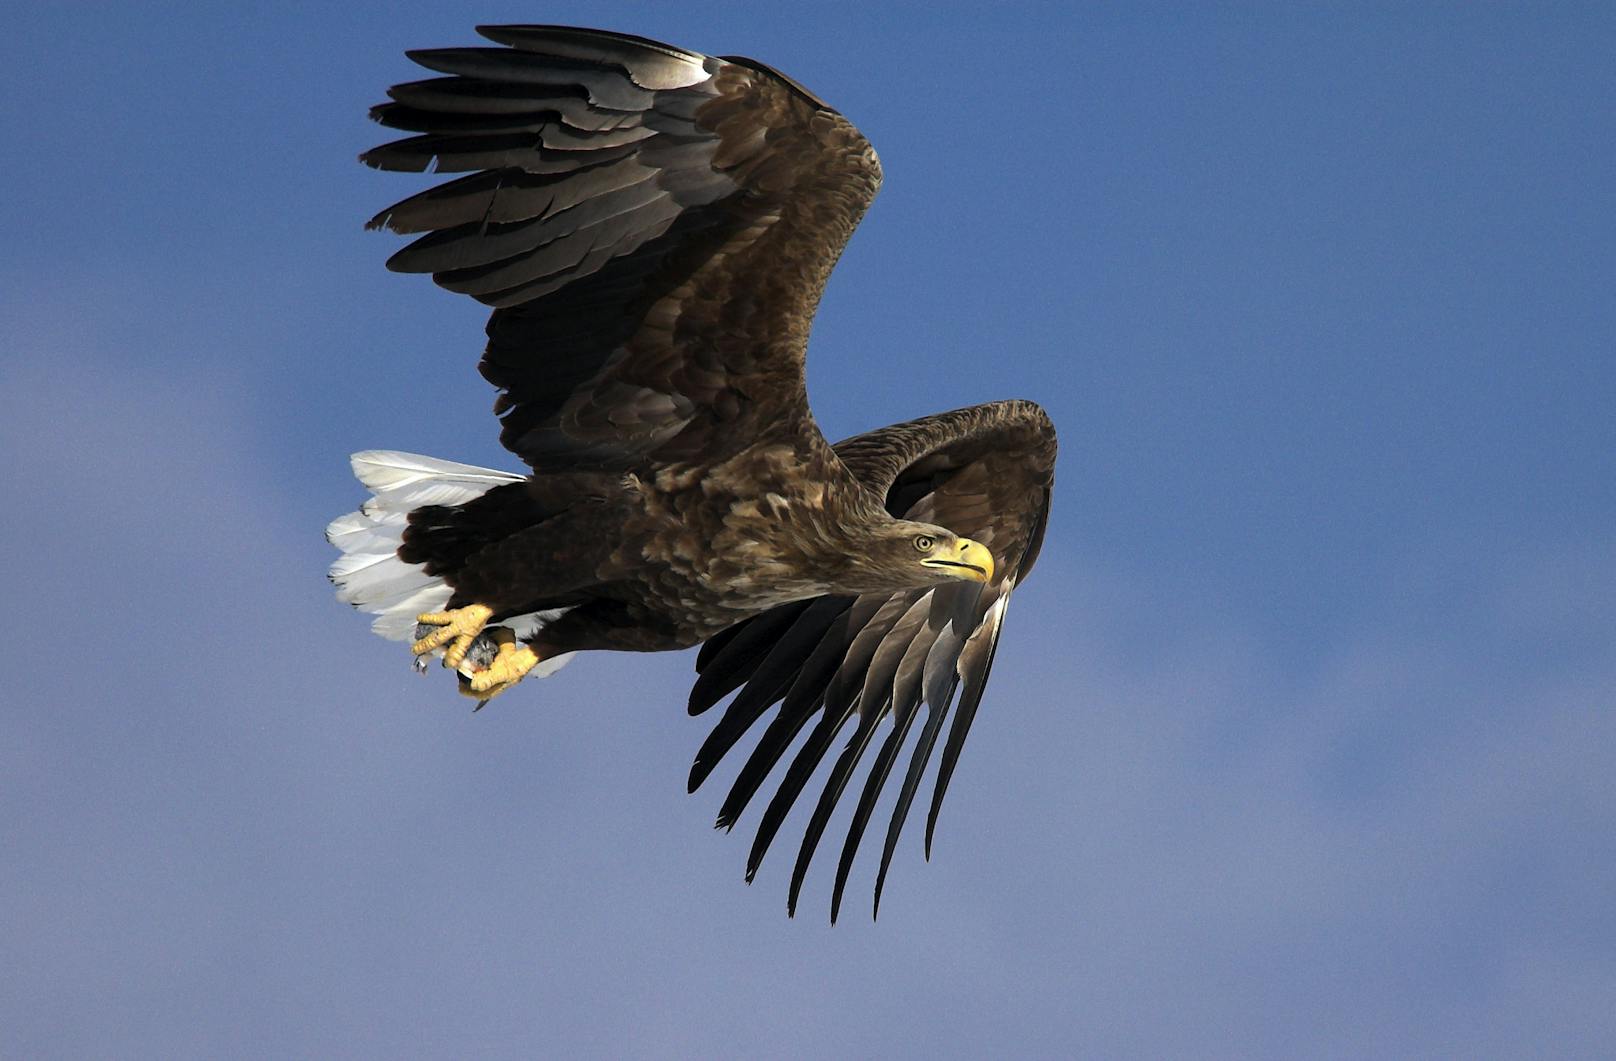 Die Besenderung liefert neue wissenschaftliche Erkenntnisse über die bevorzugten Flugrouten bis hin zum Paarungsverhalten der Adler.